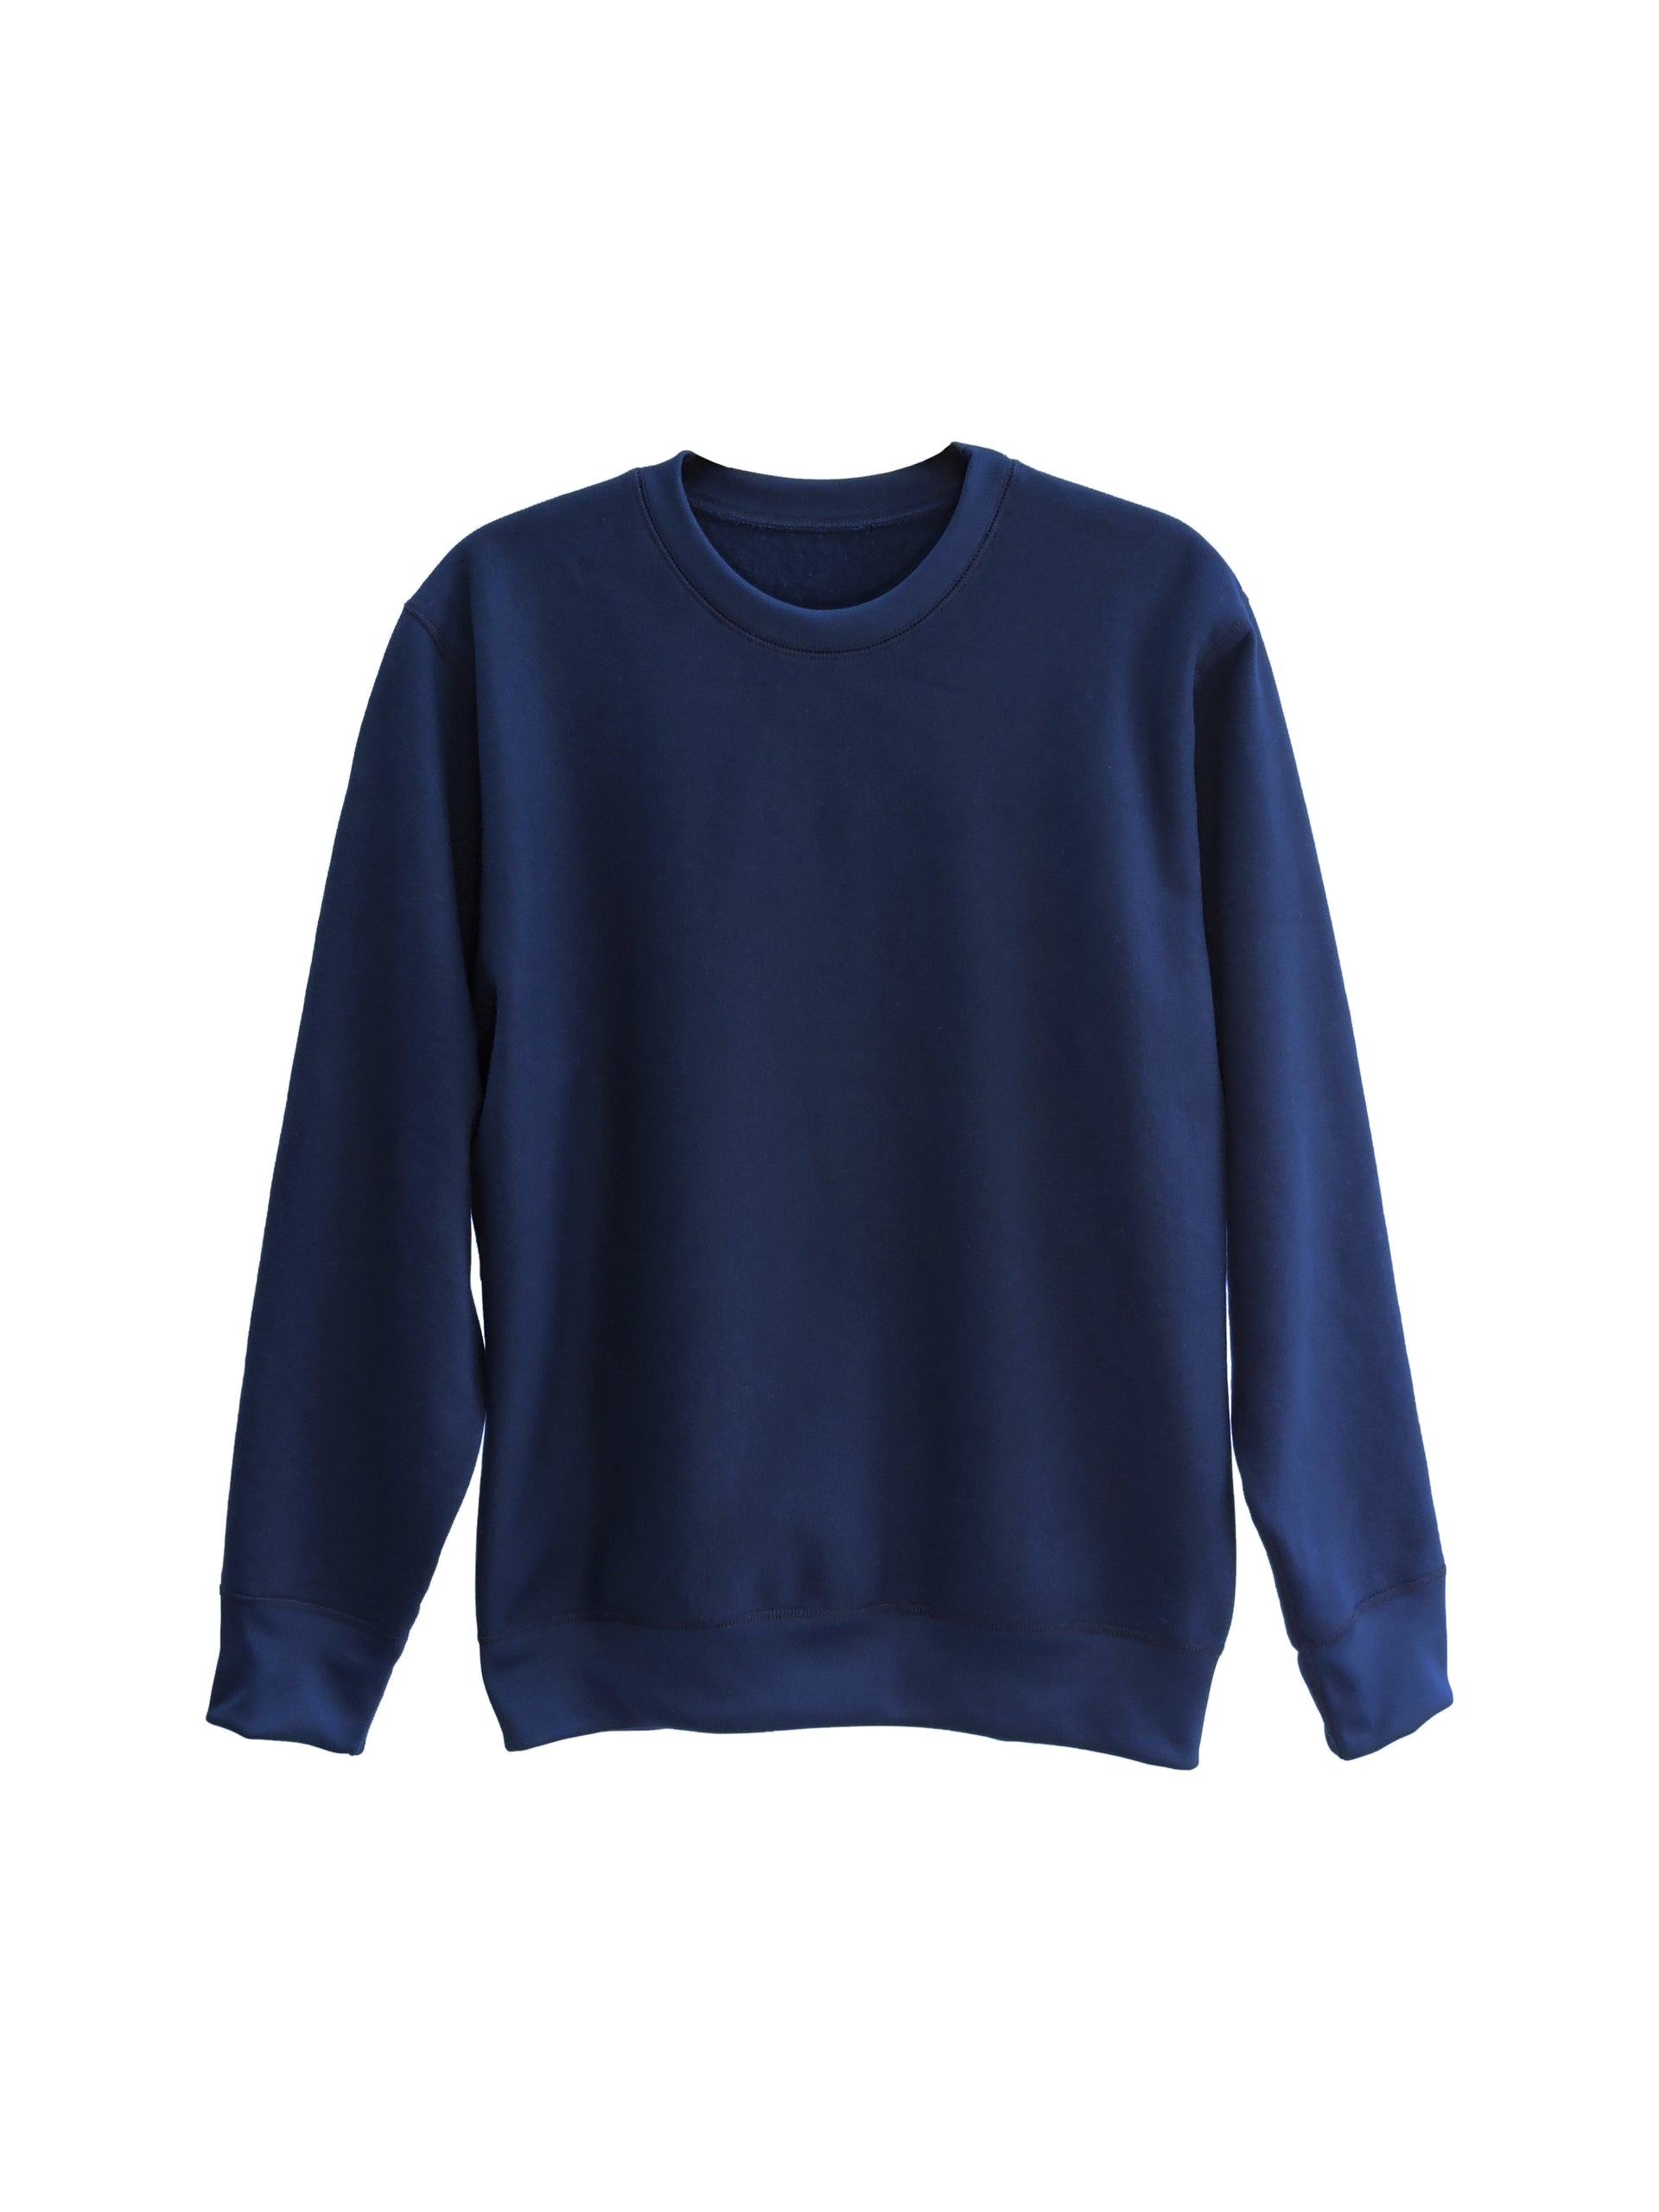 正規店の通販 5G Crew Neck Sweater SUJS203 Navy - メンズ